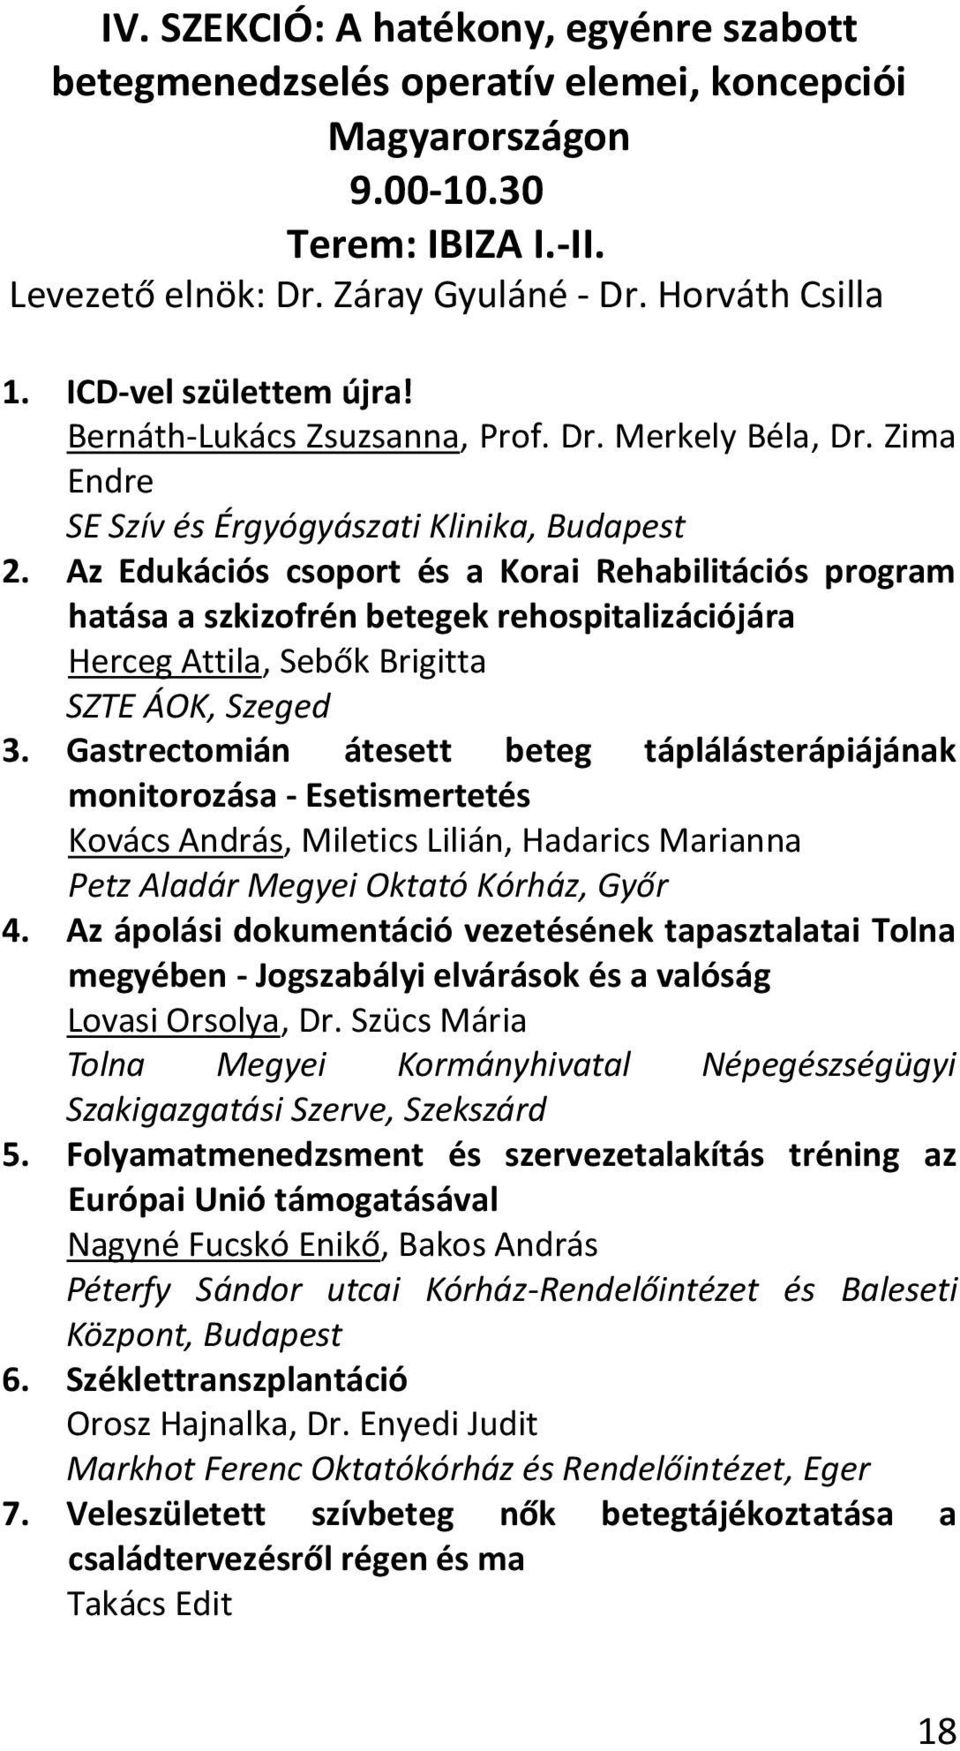 Az Edukációs csoport és a Korai Rehabilitációs program hatása a szkizofrén betegek rehospitalizációjára Herceg Attila, Sebők Brigitta SZTE ÁOK, Szeged 3.